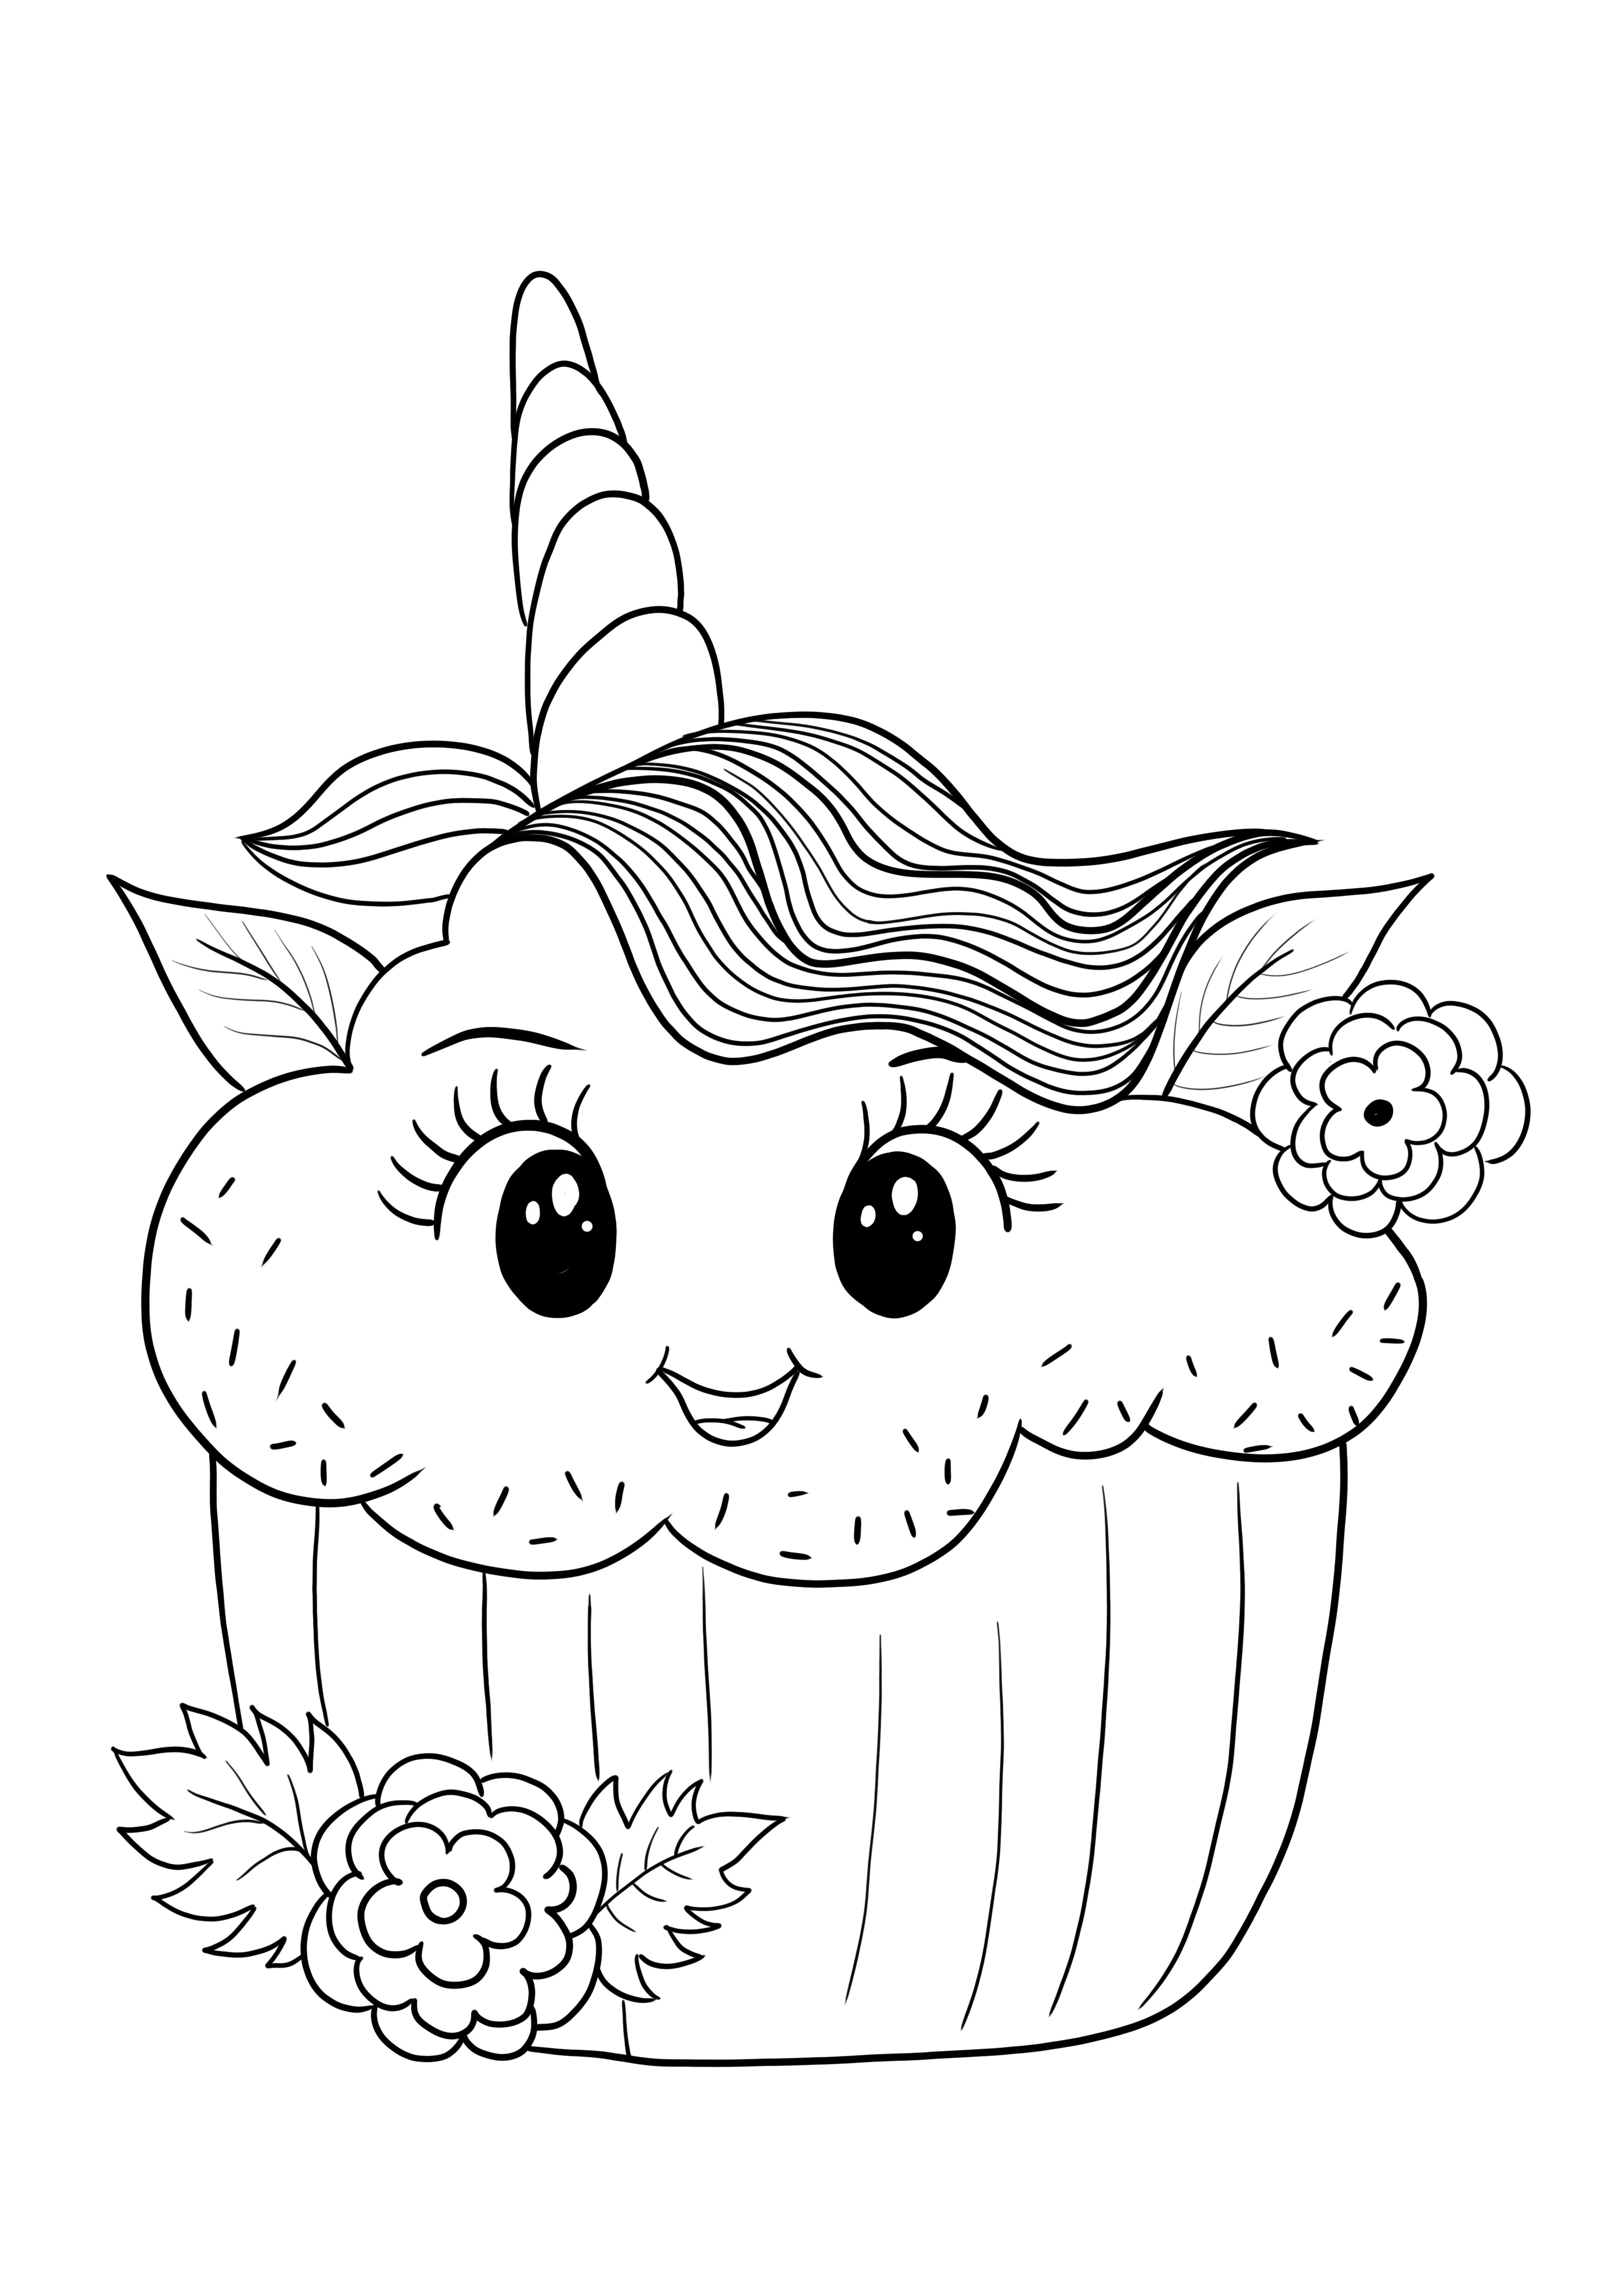 Immagine Shopkins cupcake unicorno per la stampa gratuita